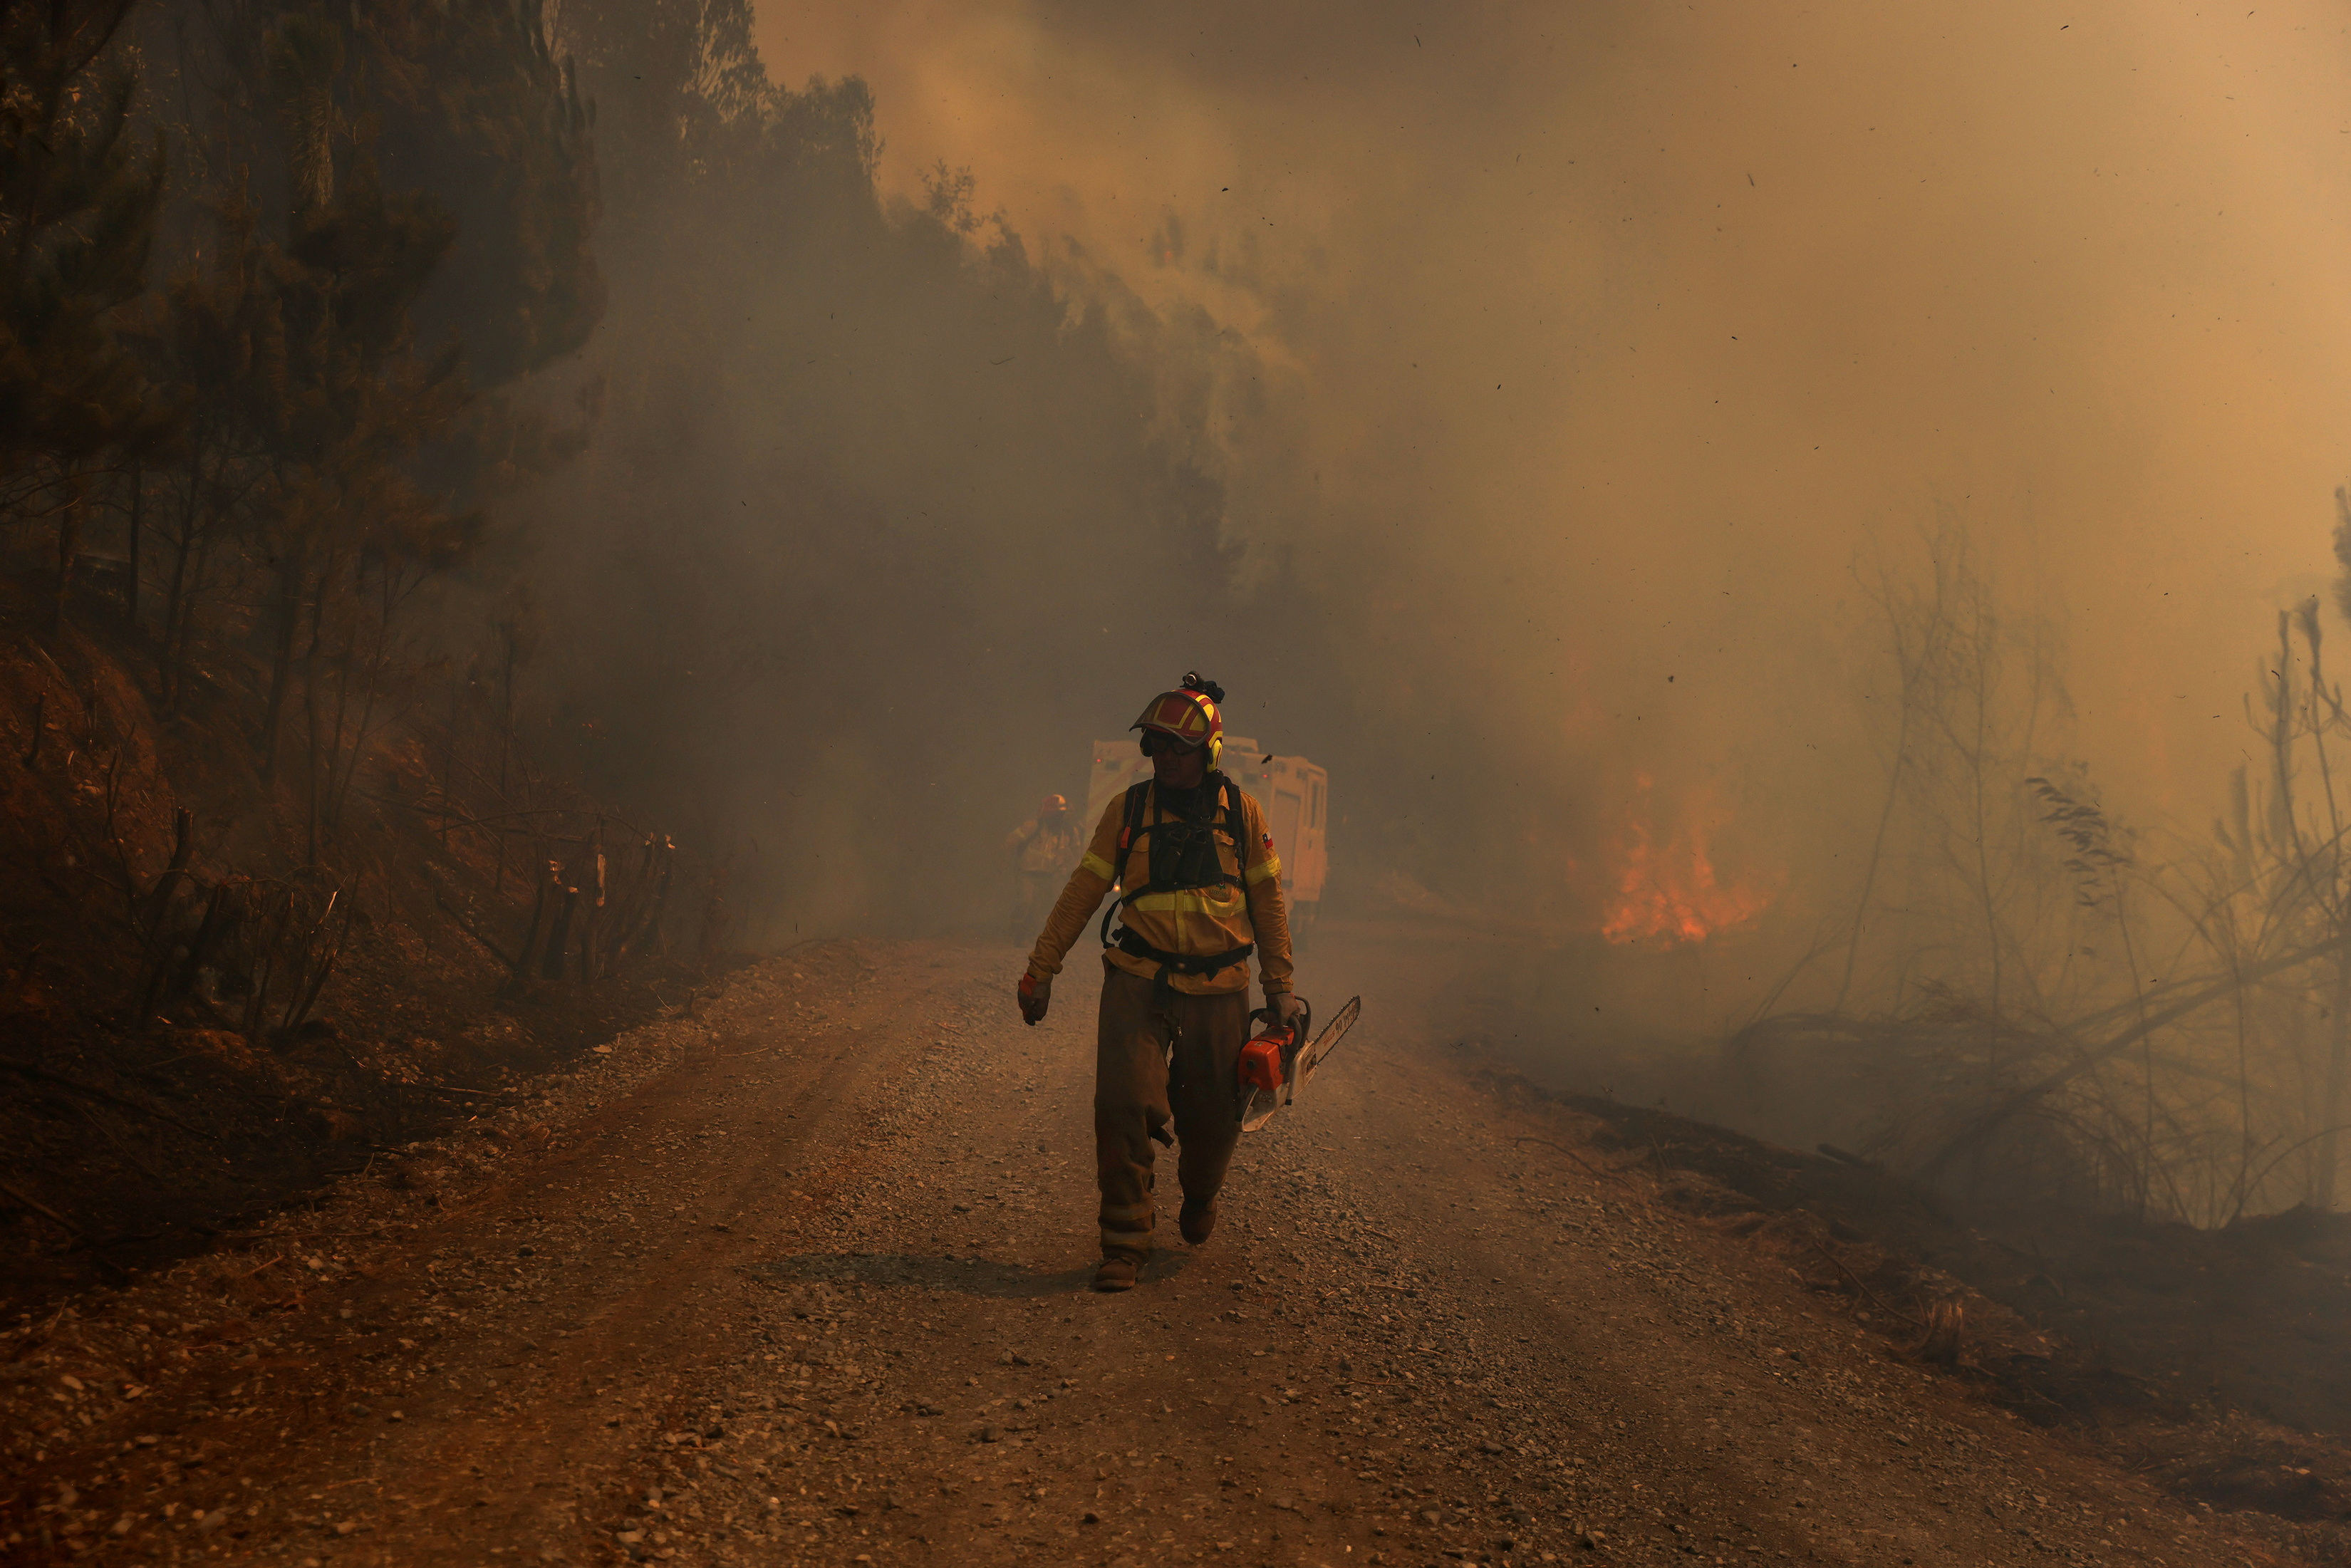 A partir del miércoles vuelven las altas temperaturas a las zonas más golpeadas por los incendios, desde el Maule hasta La Araucanía, entre 250 y 600 kilómetros al sur de la capital (REUTERS/Ivan Alvarado)